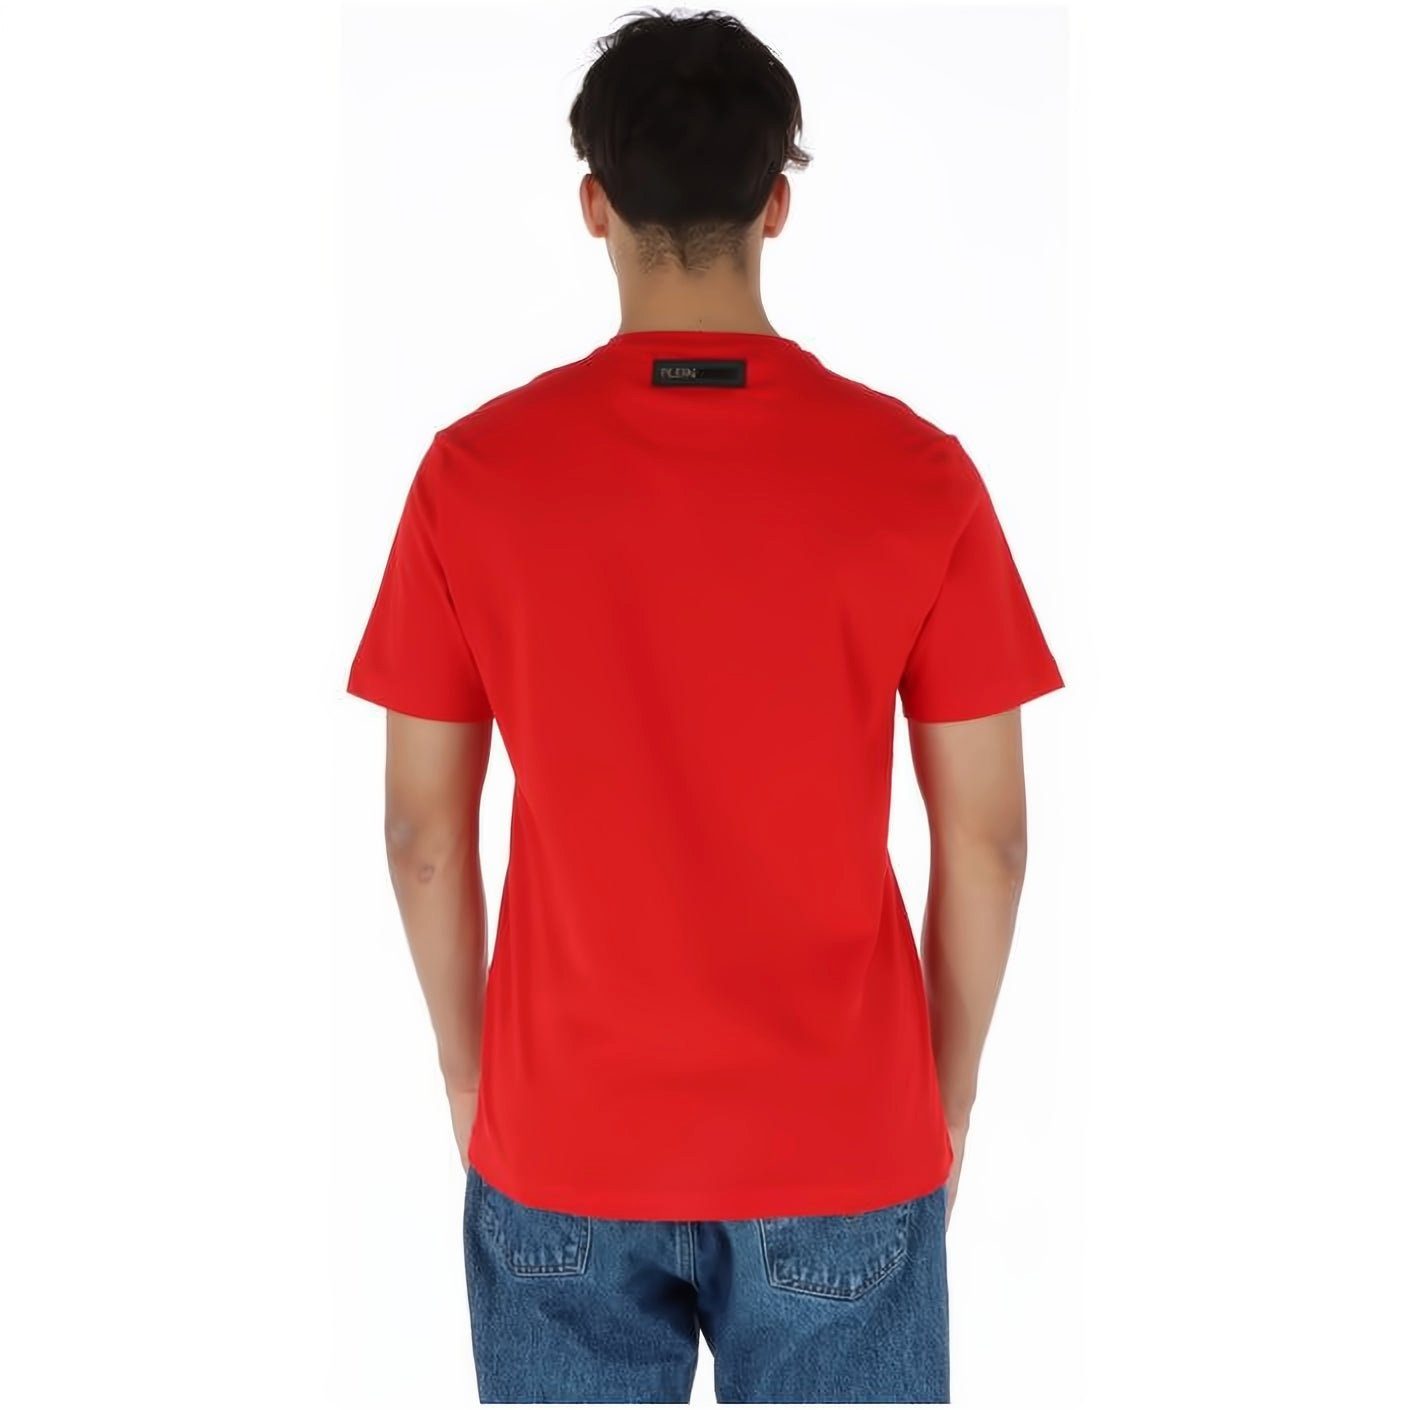 Farbauswahl Stylischer Look, T-Shirt SPORT vielfältige ROUND Tragekomfort, PLEIN hoher NECK